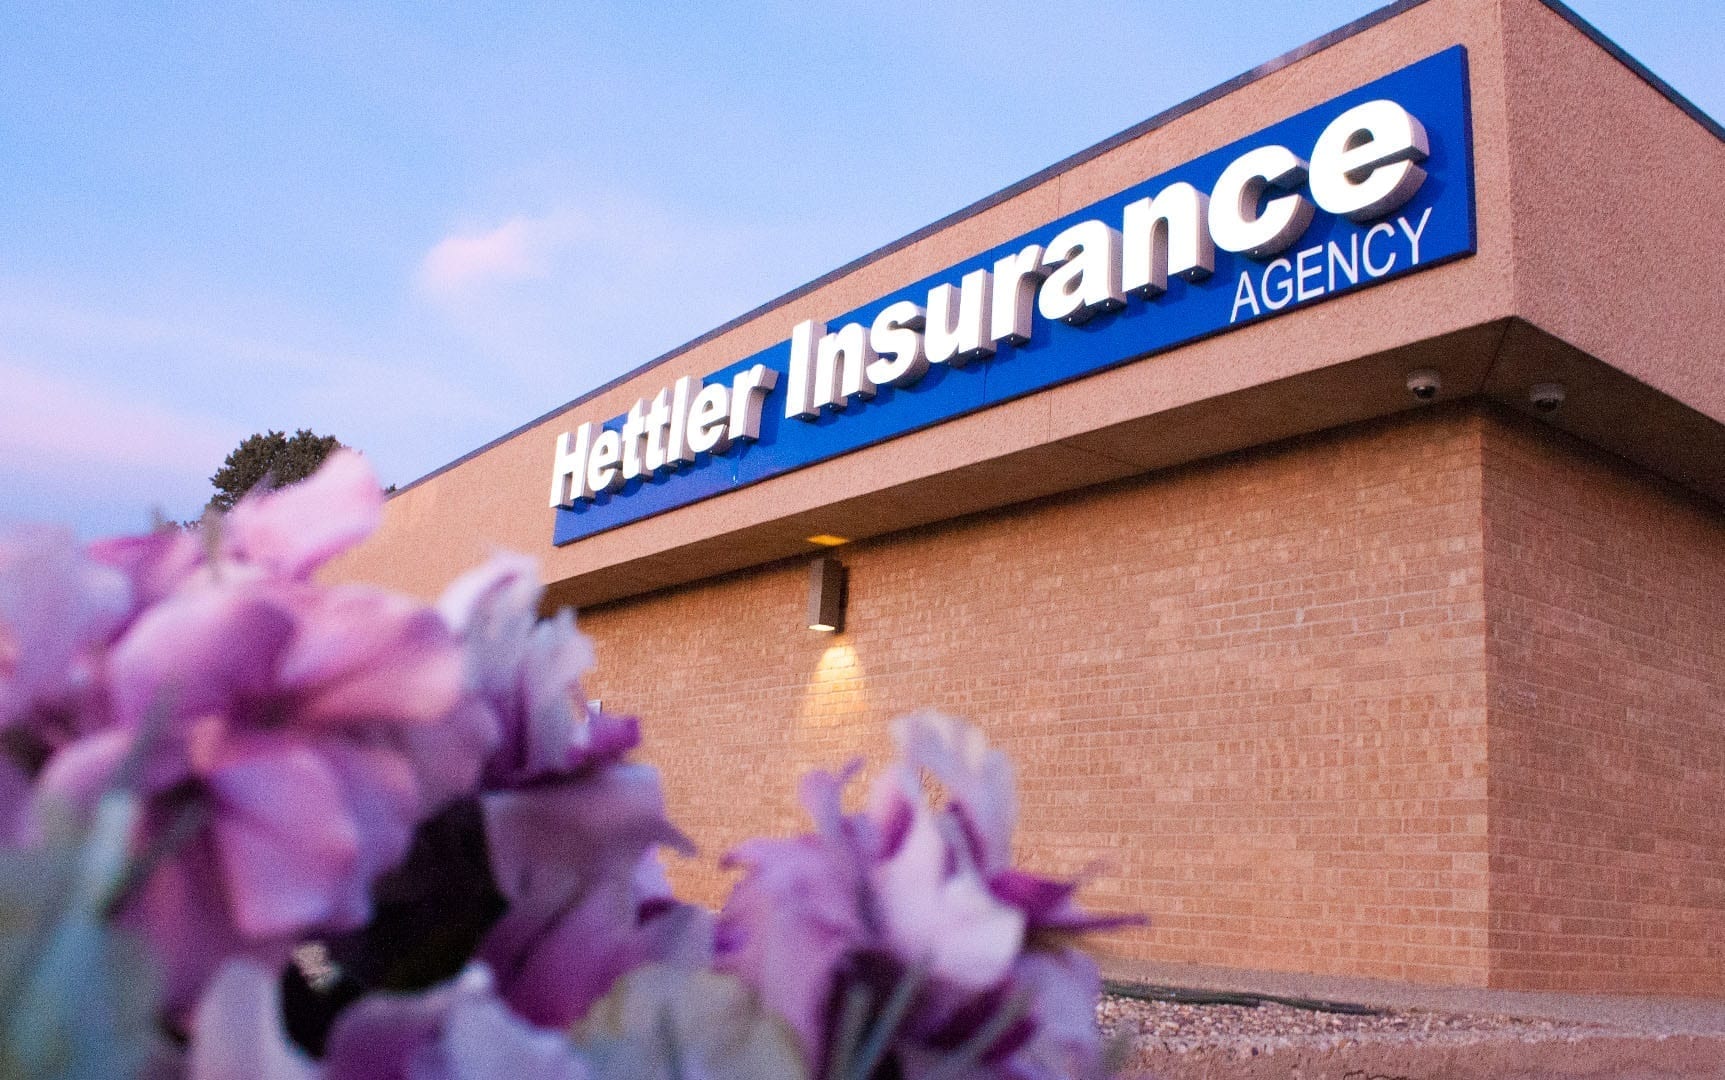 hettler insurance agency